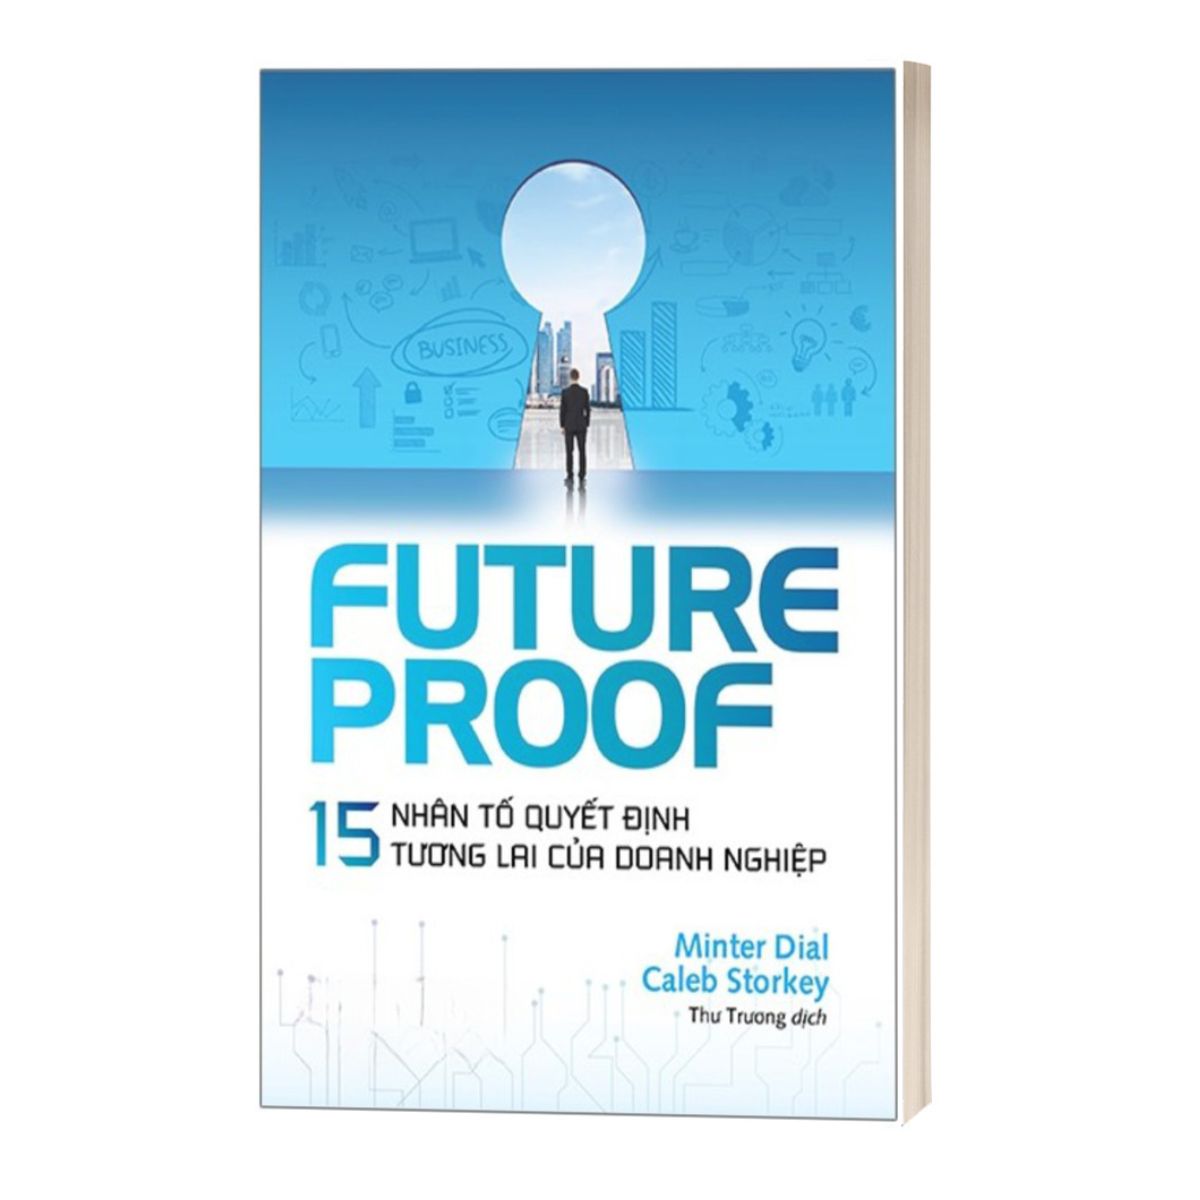 Futureproof - 15 Nhân Tố Quyết Định Tương Lai Của Doanh Nghiệp